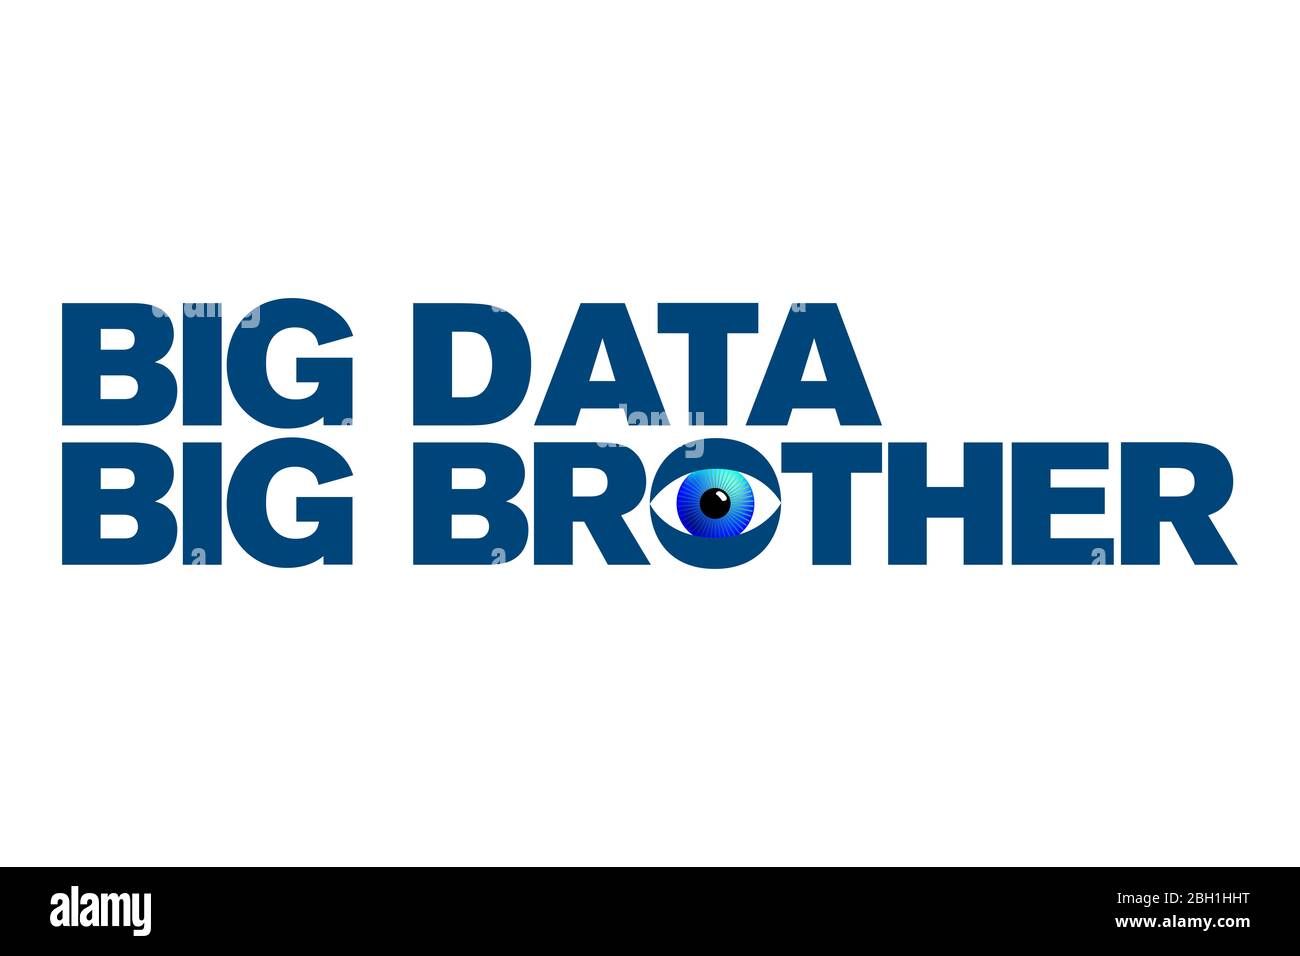 Big Data et Big Brother s'affichent sous un œil bleu. Mots affichés en majuscules de couleur gras et bleue. Illustration isolée. Banque D'Images